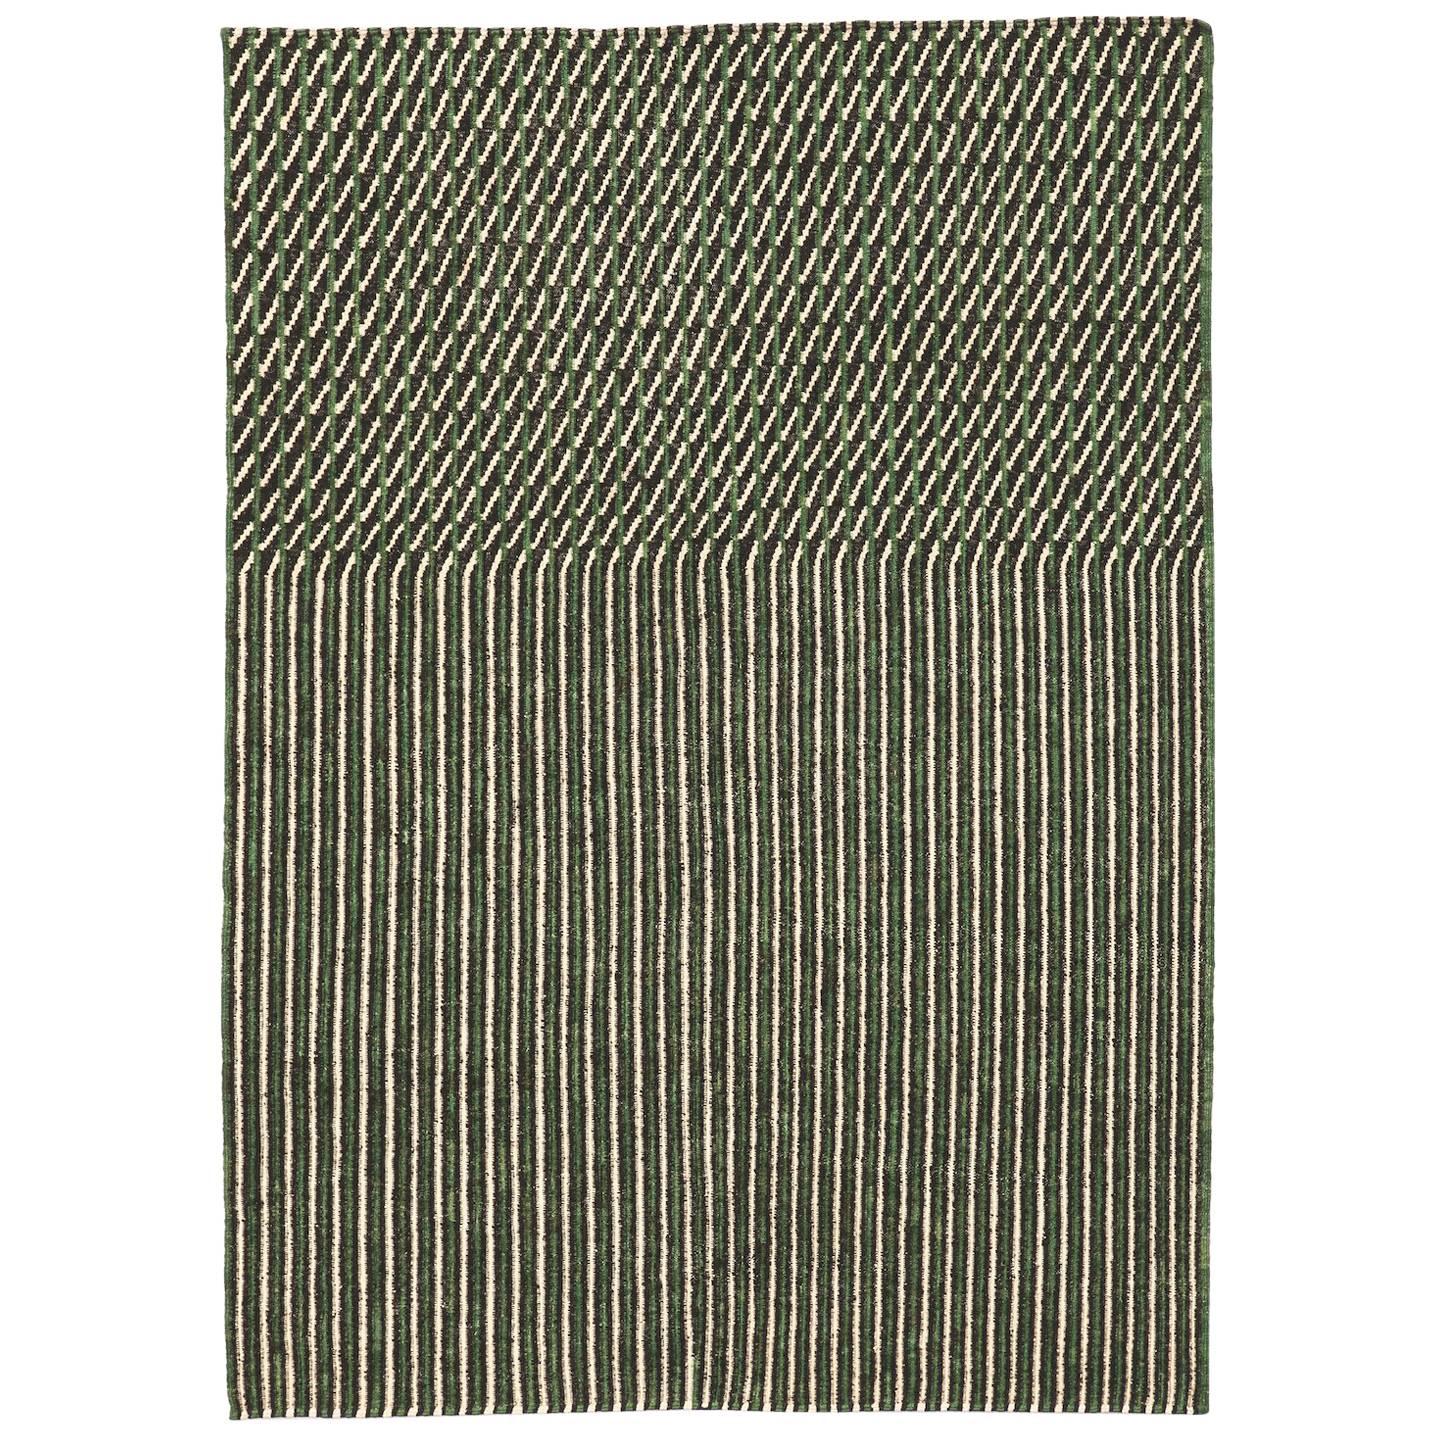 Handgesponnener Nanimarquina Blur Teppich in Grün von Ronan & Erwan Bouroullec, Medium